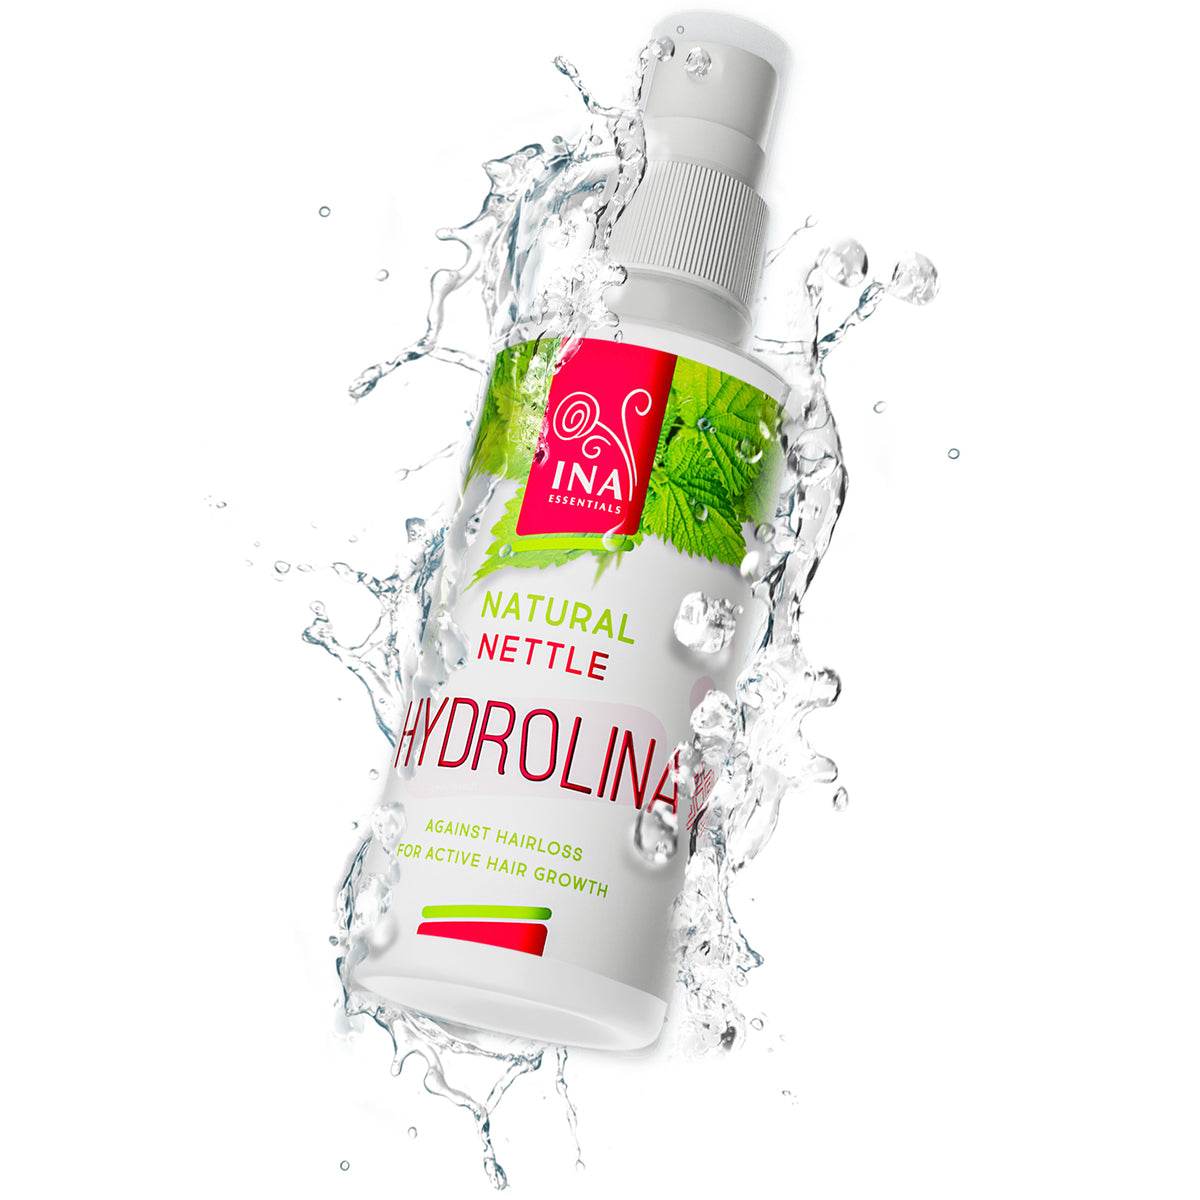 Voda z Kopřiv - Hydrolina - sprej na vlasy - pro Vypadávání vlasů a Mastné vlasy